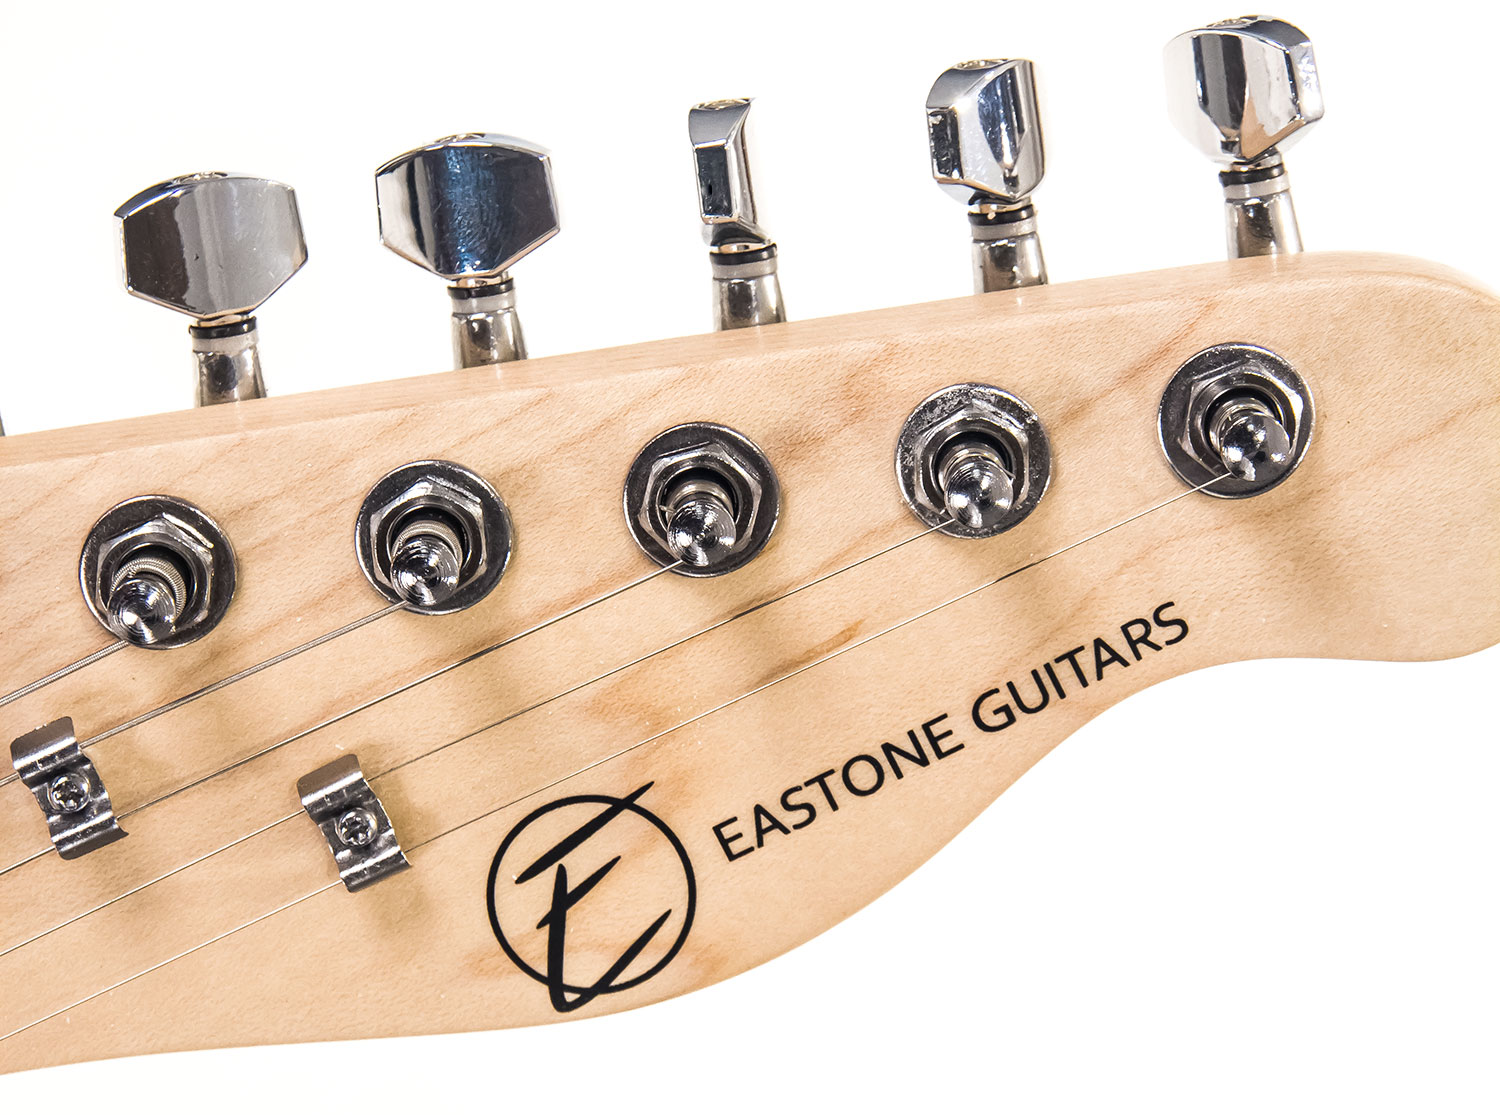 Eastone Tl70 Ss Ht Pur - 3 Tone Sunburst - E-Gitarre in Teleform - Variation 4